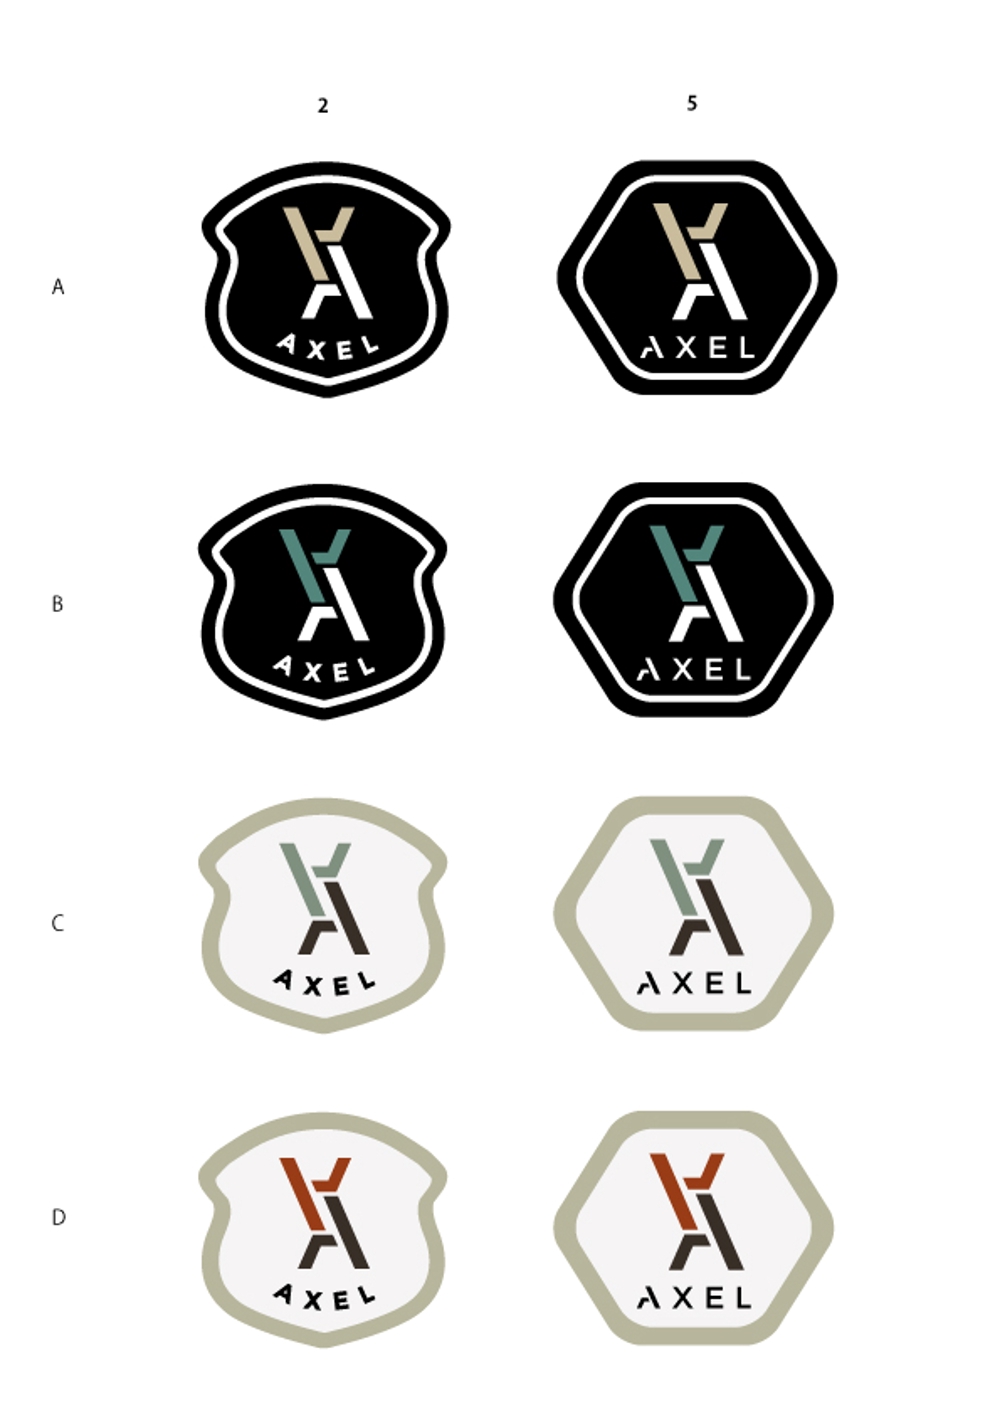 アパレルショップサイトの「AXEL」のロゴ